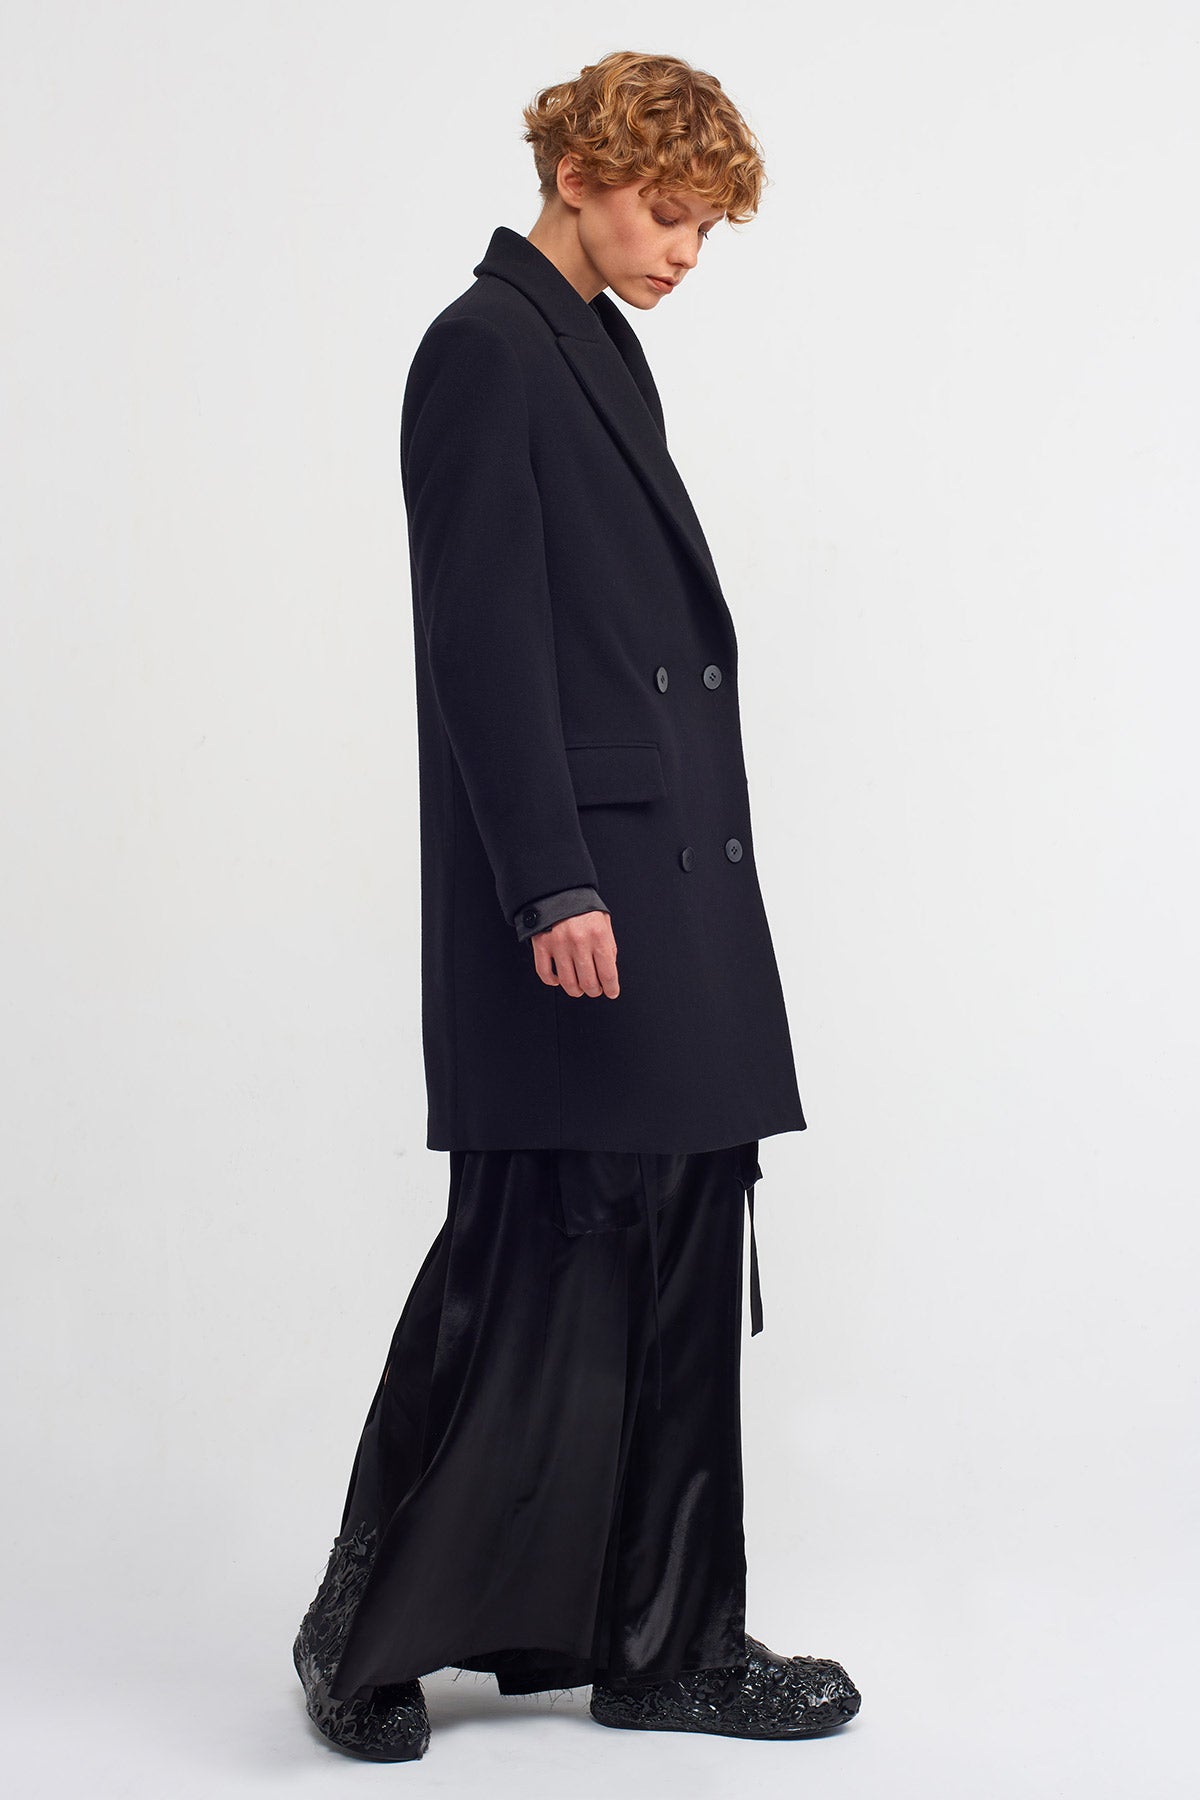 Siyah Uzun Blazer Ceket-K235015007